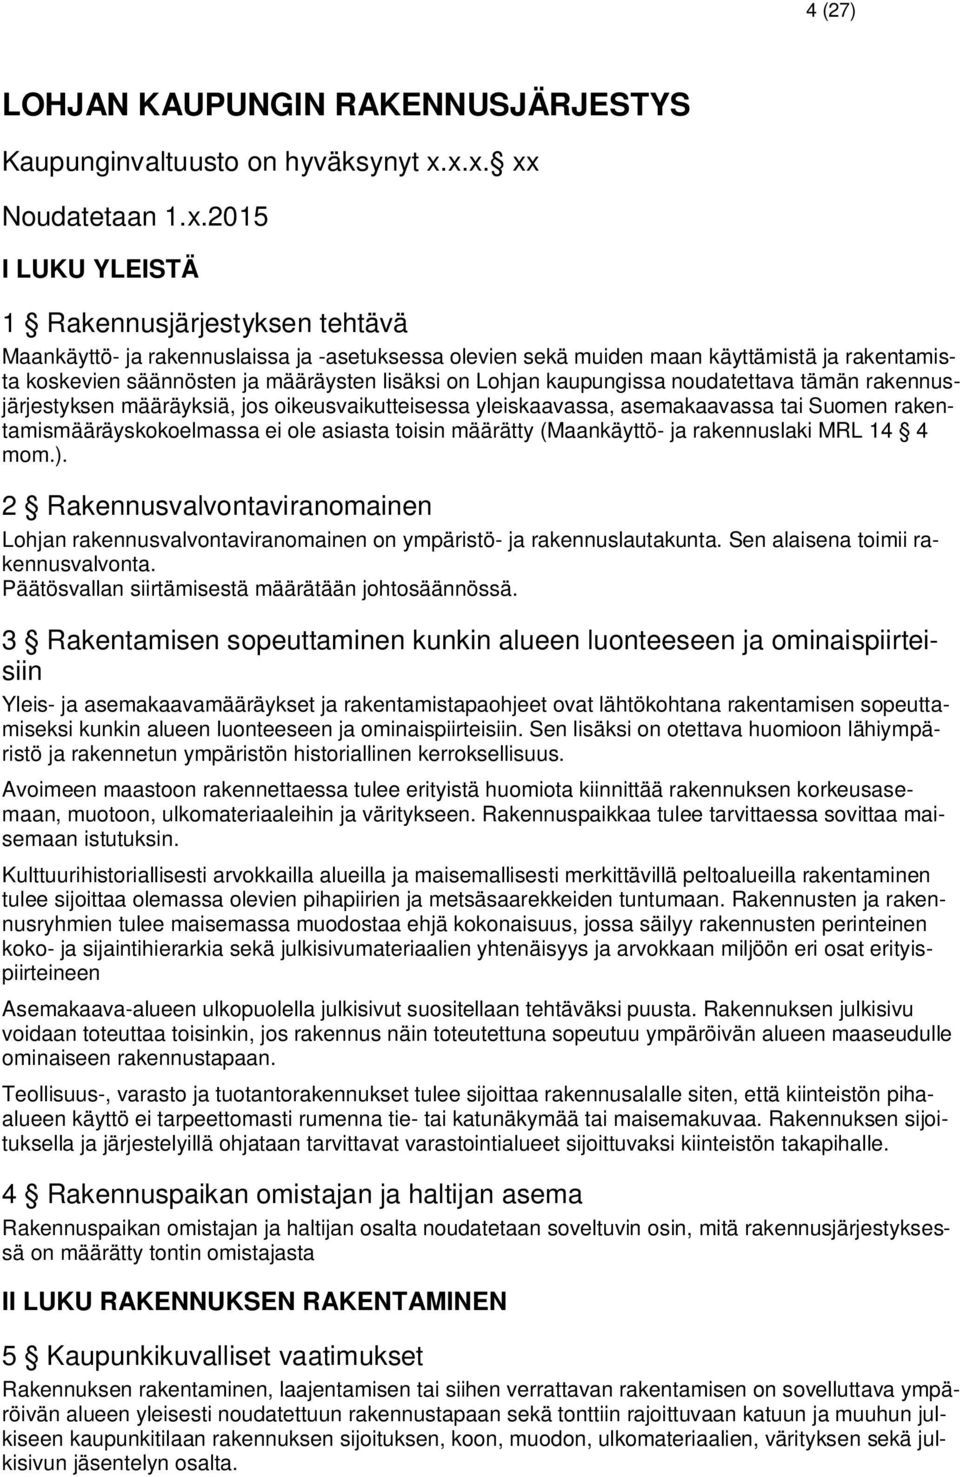 määräysten lisäksi on Lohjan kaupungissa noudatettava tämän rakennusjärjestyksen määräyksiä, jos oikeusvaikutteisessa yleiskaavassa, asemakaavassa tai Suomen rakentamismääräyskokoelmassa ei ole